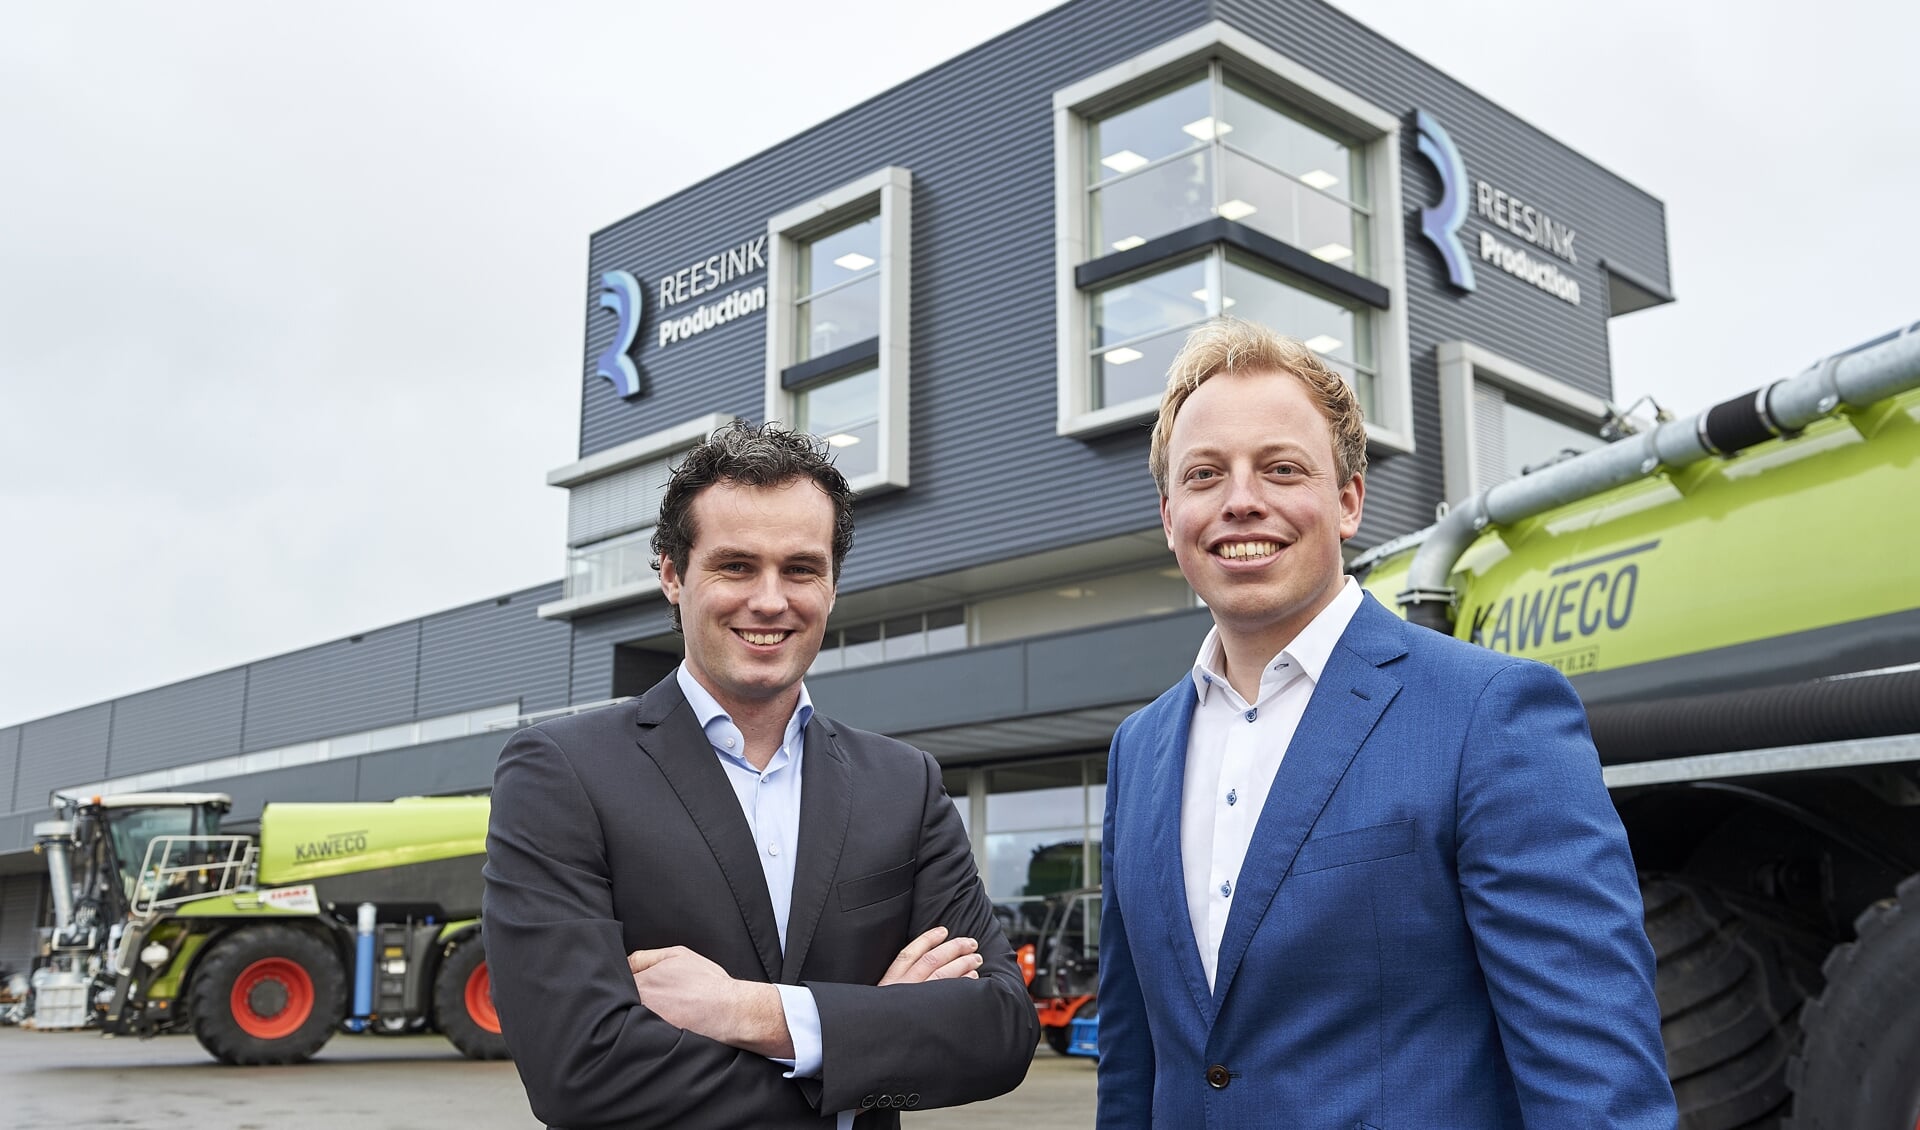 Patrik Roelofs (l.) en Rens Veenemen vormen tweekoppige aansturing van Reesink Production. Foto: PR